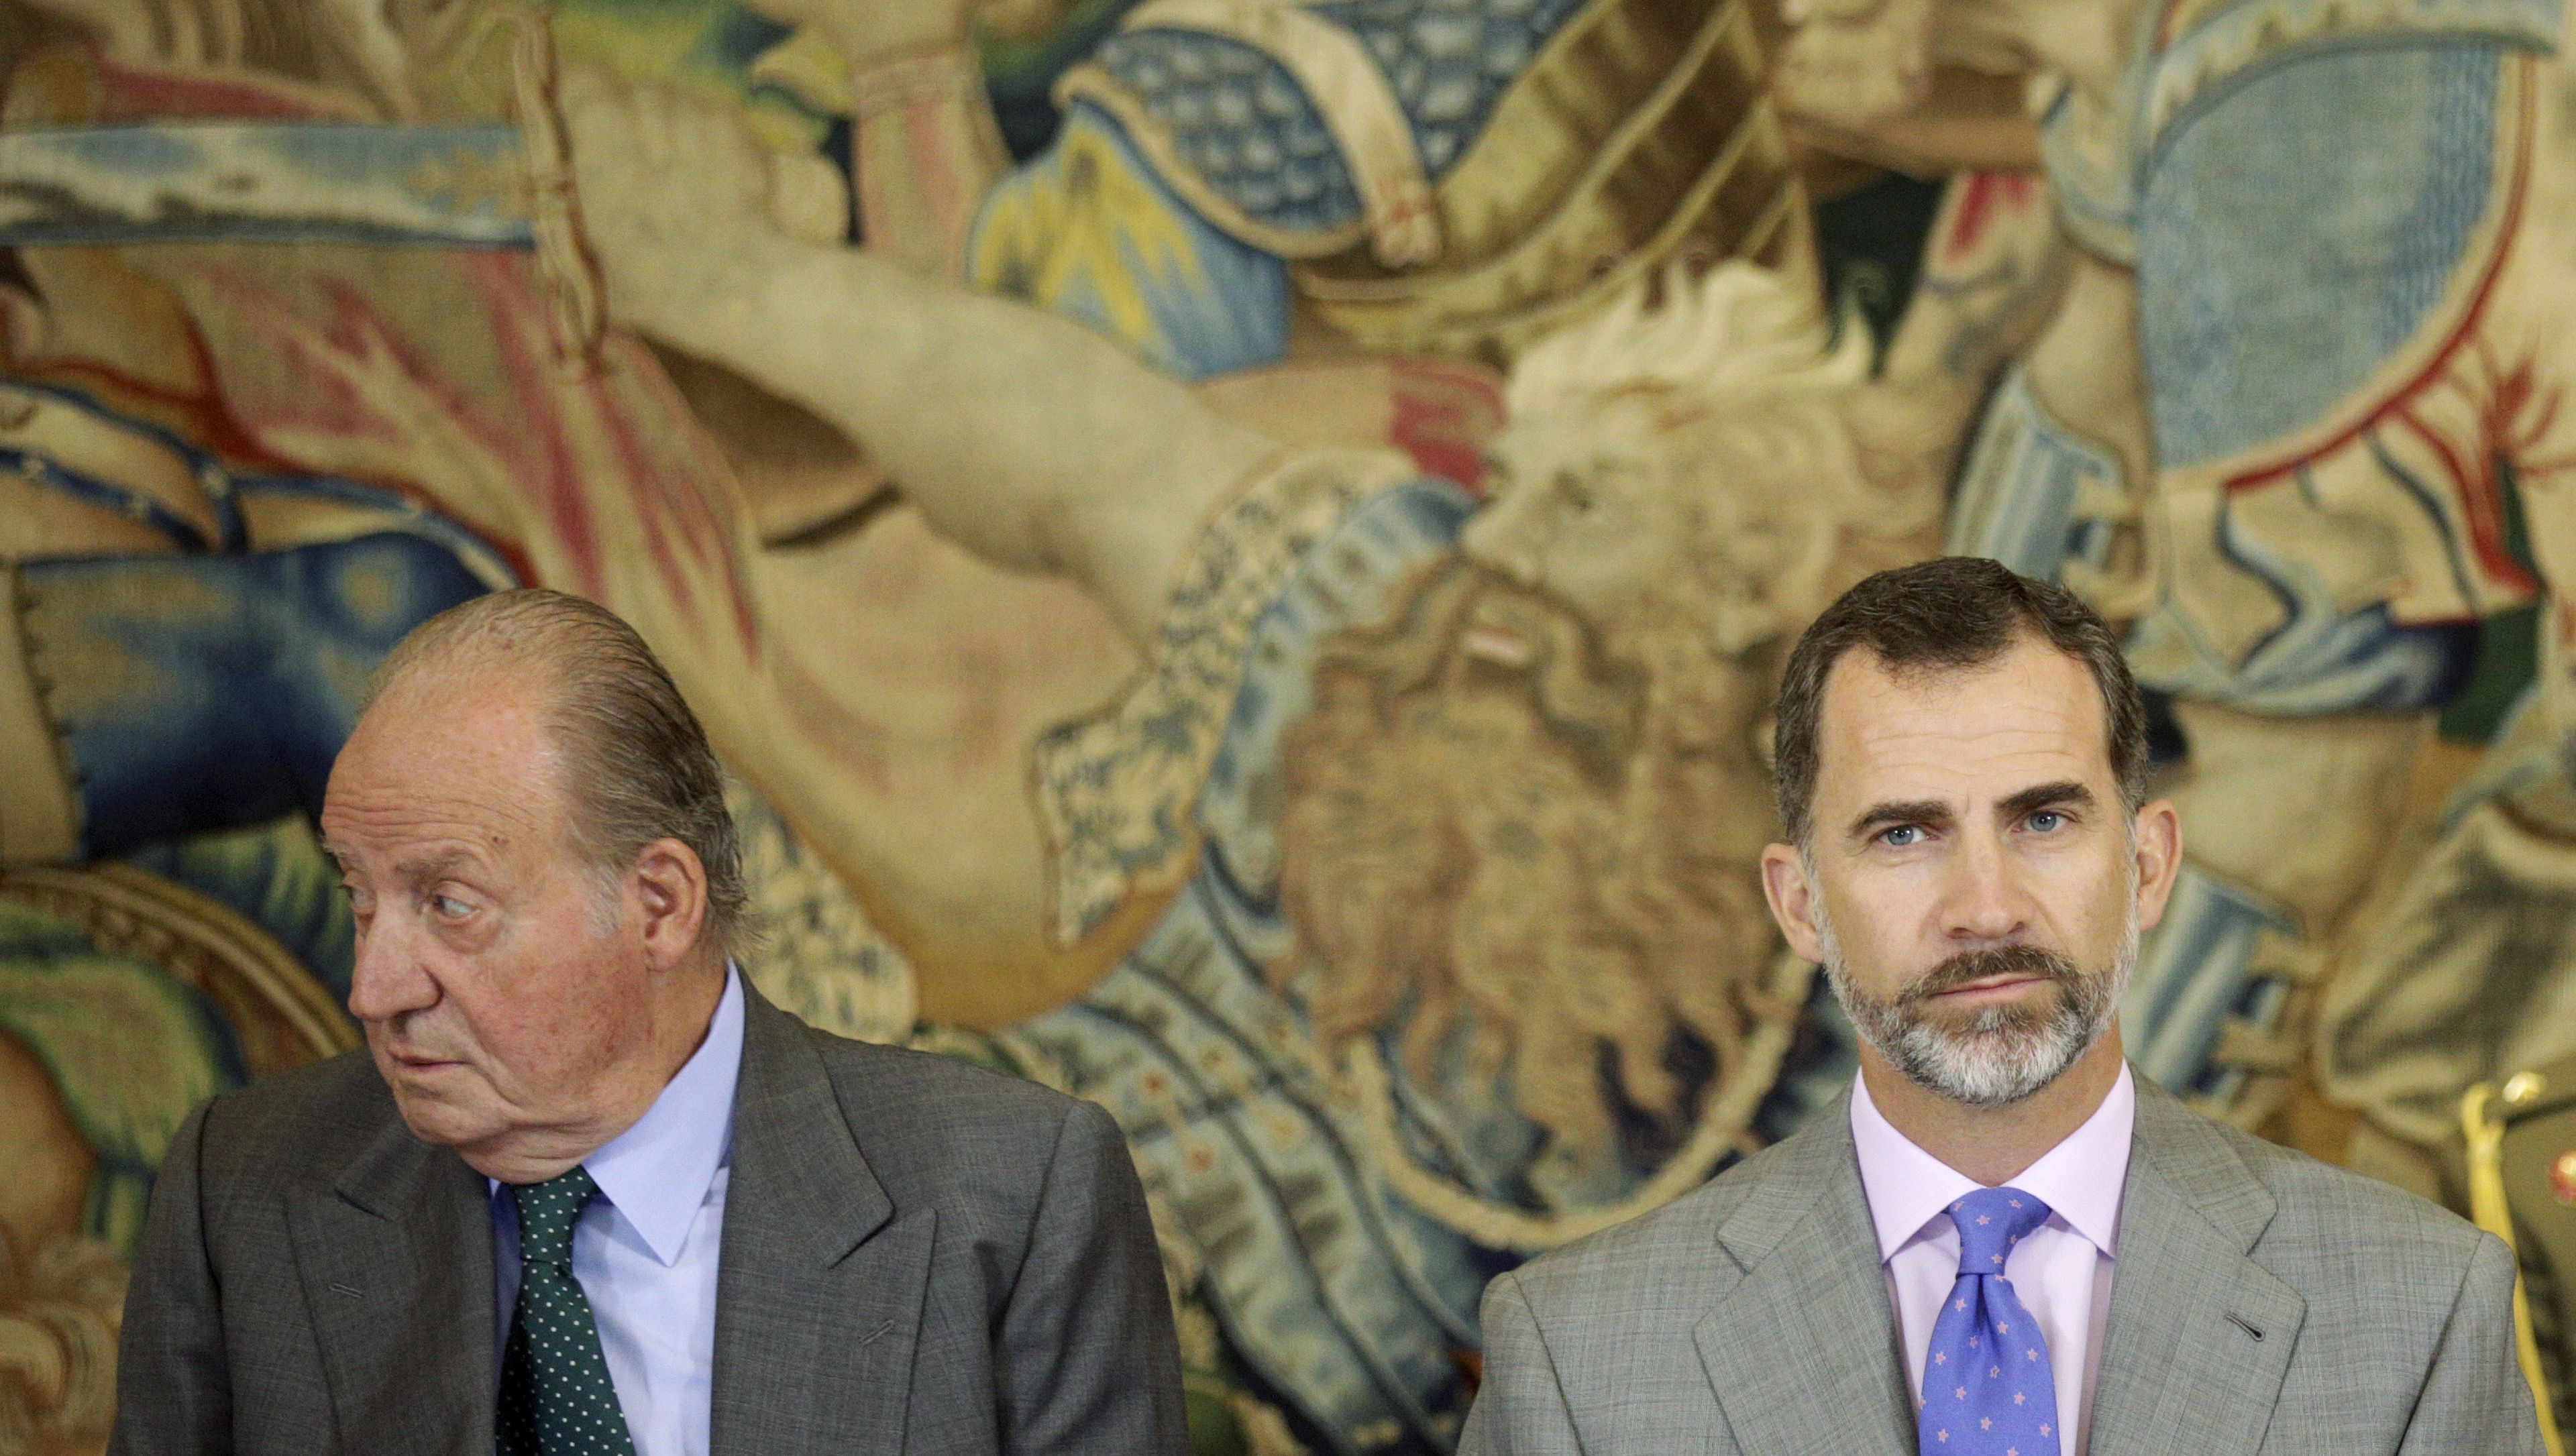 El rey Felipe VI junto a don Juan Carlos, en una fotografía de archivo